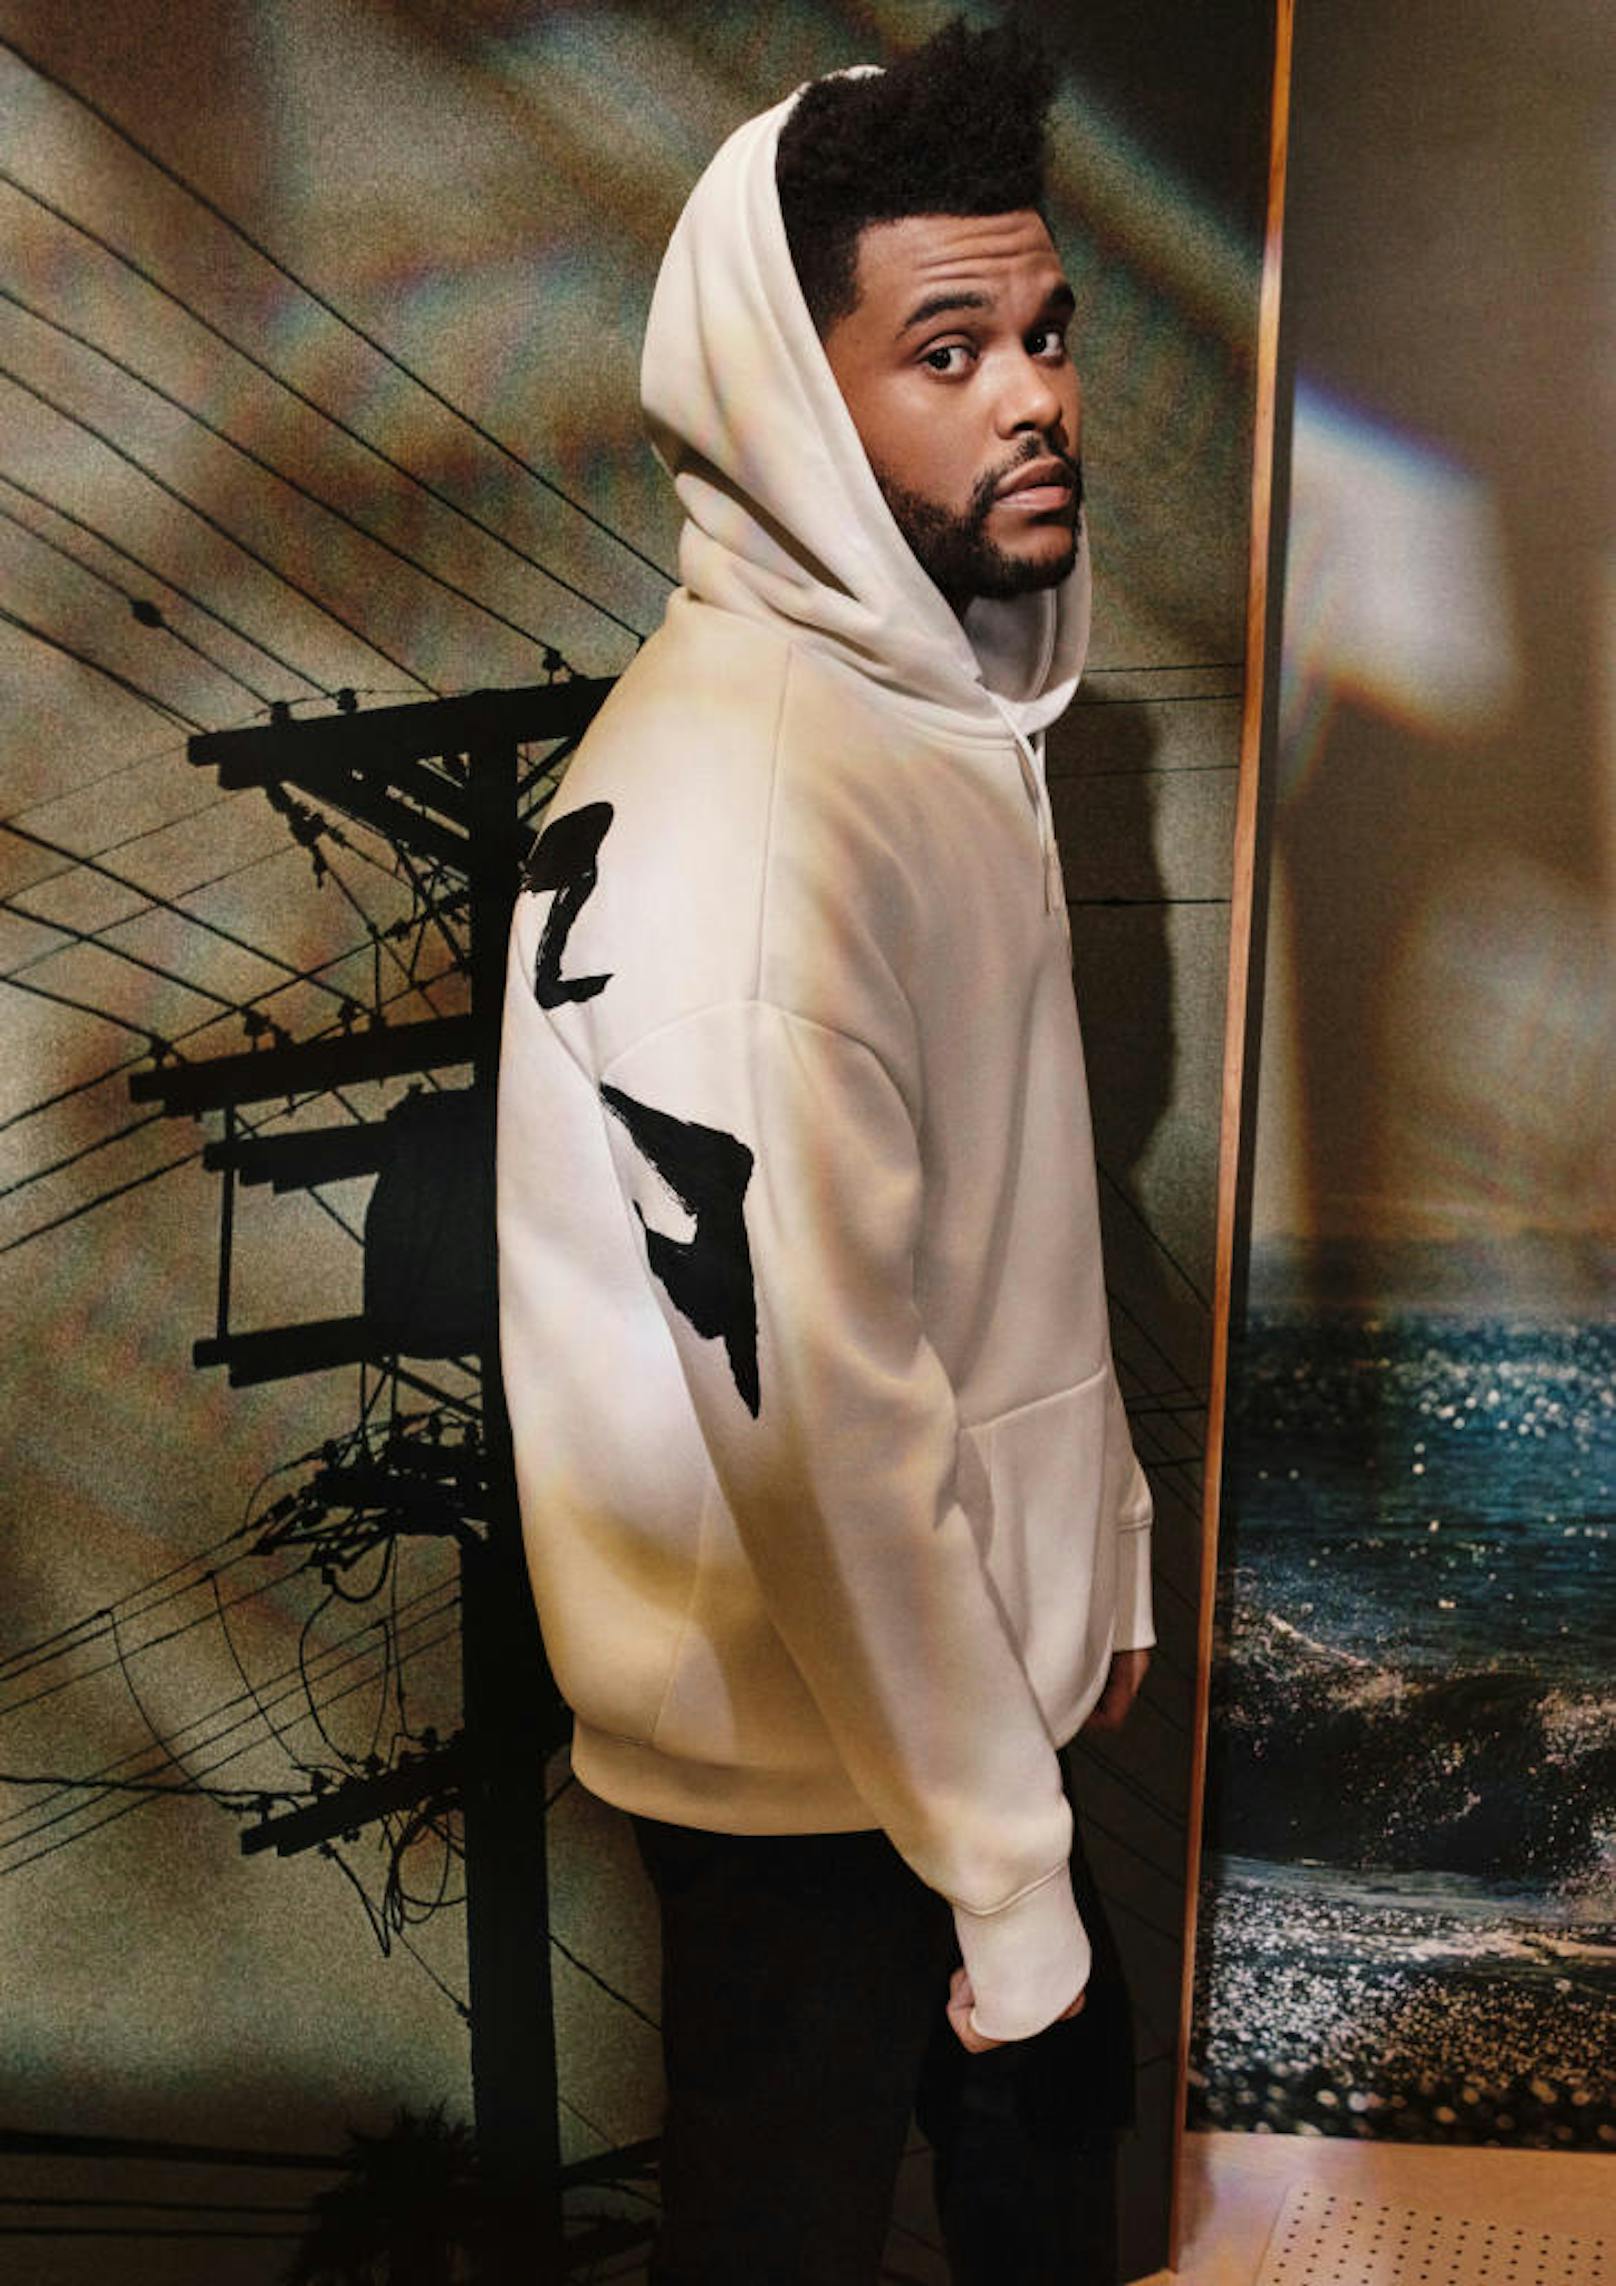 Die Kooperation zwischen dem schwedischen Moderiesen H&M und dem Rapper Abel Tesfaye von The Weeknd geht in die zweite Runde.